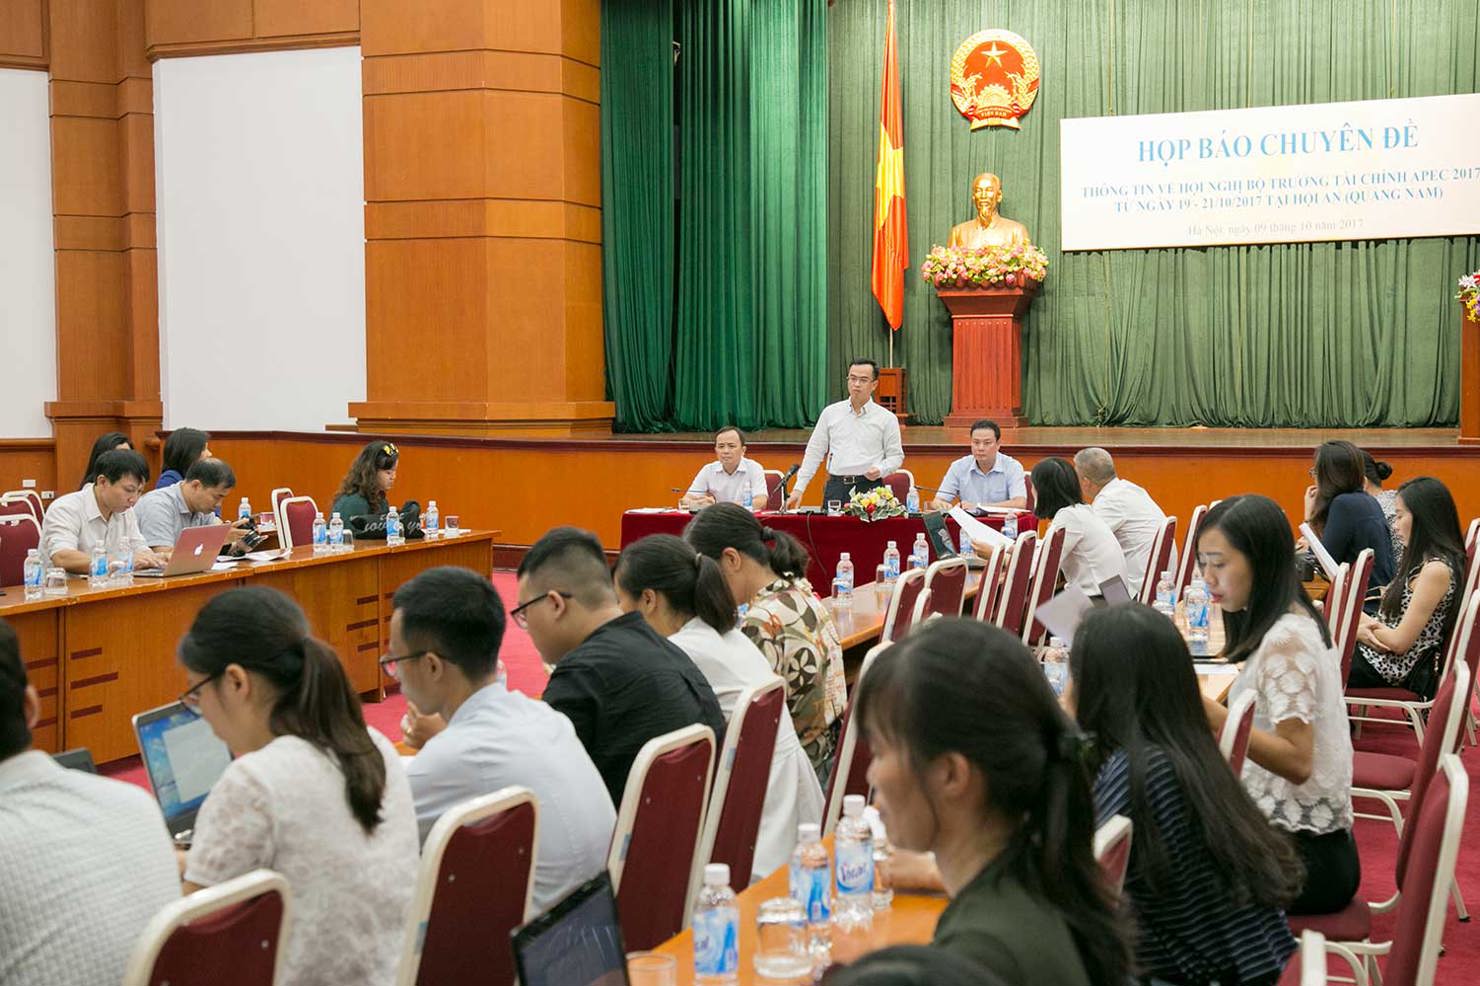 Bộ Tài chính tổ chức buổi họp báo chuyên đề cung cấp thông tin báo chí về Hội nghị Bộ trưởng Tài chính APEC (FMM) lần thứ 24 và các Hội nghị liên quan được tổ chức từ ngày 19-21/10/2017 tại Hội An, tỉnh Quảng Nam. 